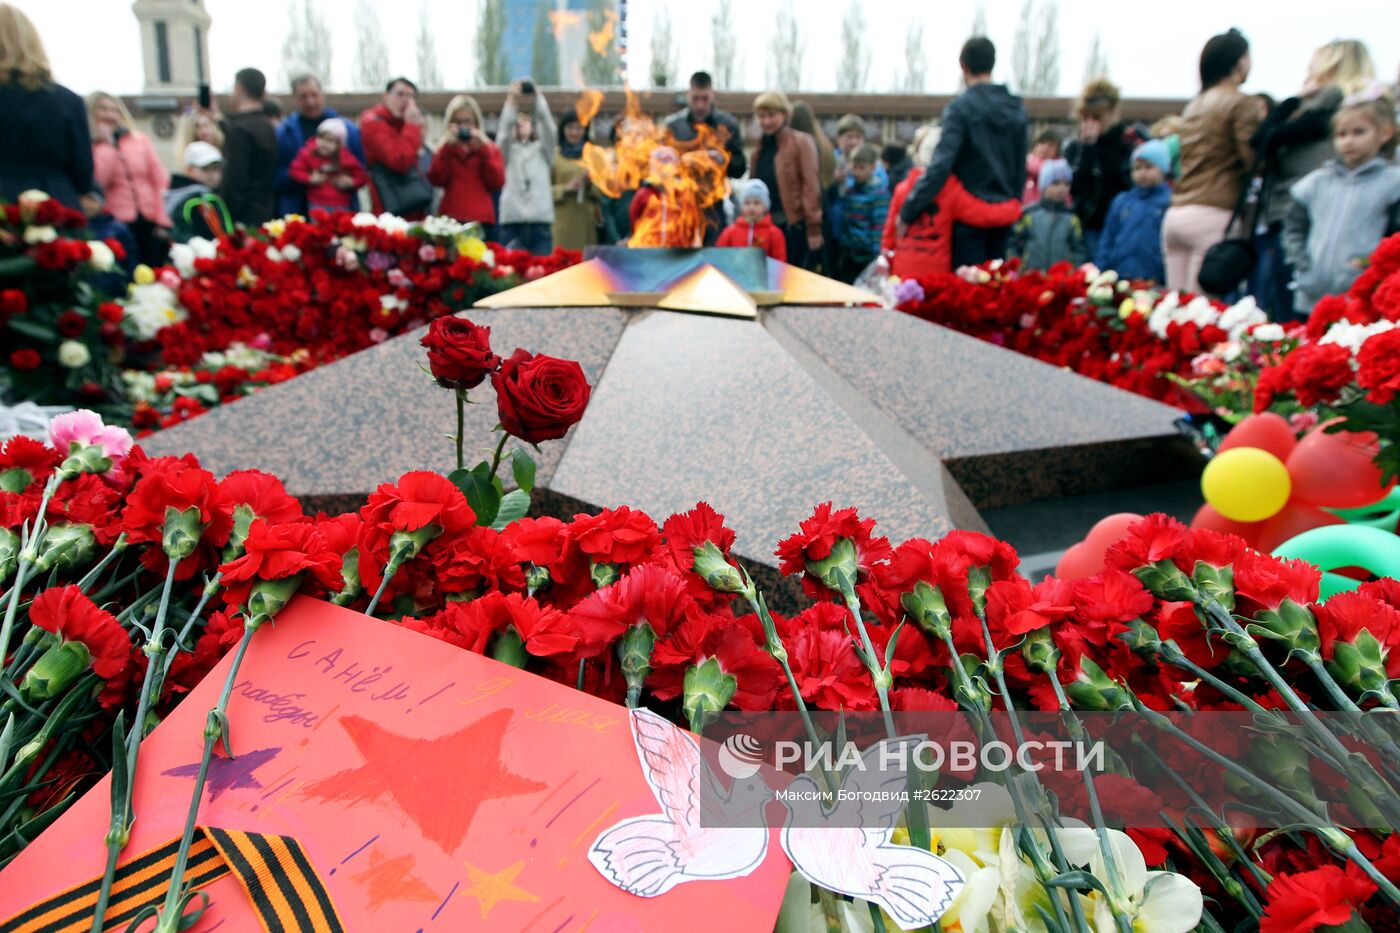 Празднование 70-летия Победы в Великой Отечественной войне 1941-1945 годов в регионах России